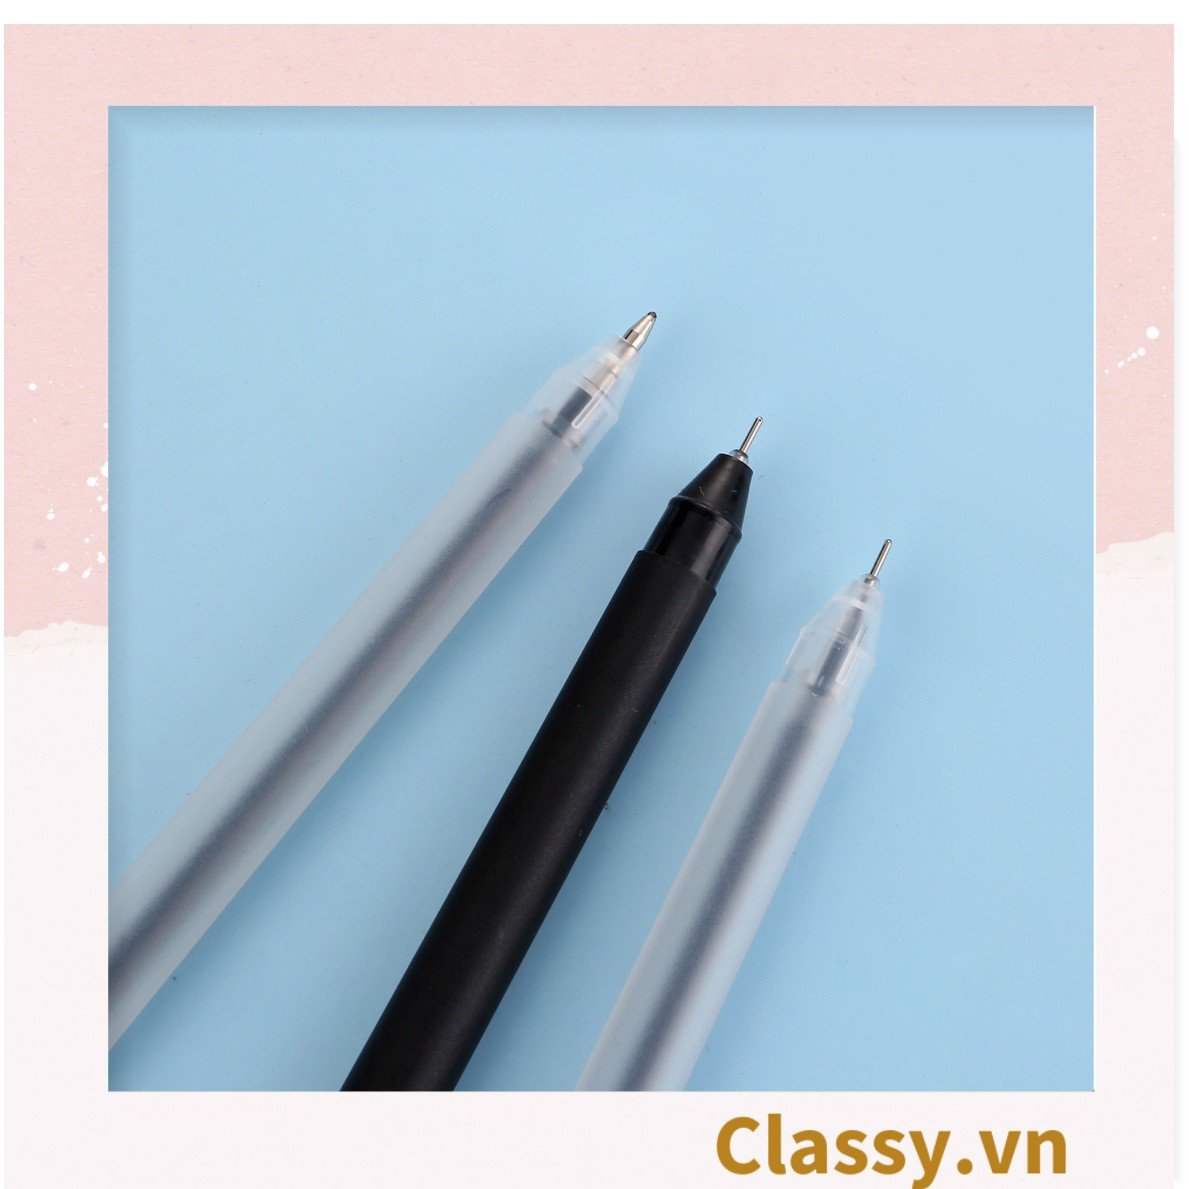 Bút mực gel màu trắng ngòi 0.5mm tiện dụng cho học sinh, sinh viên, văn phòng PK1729